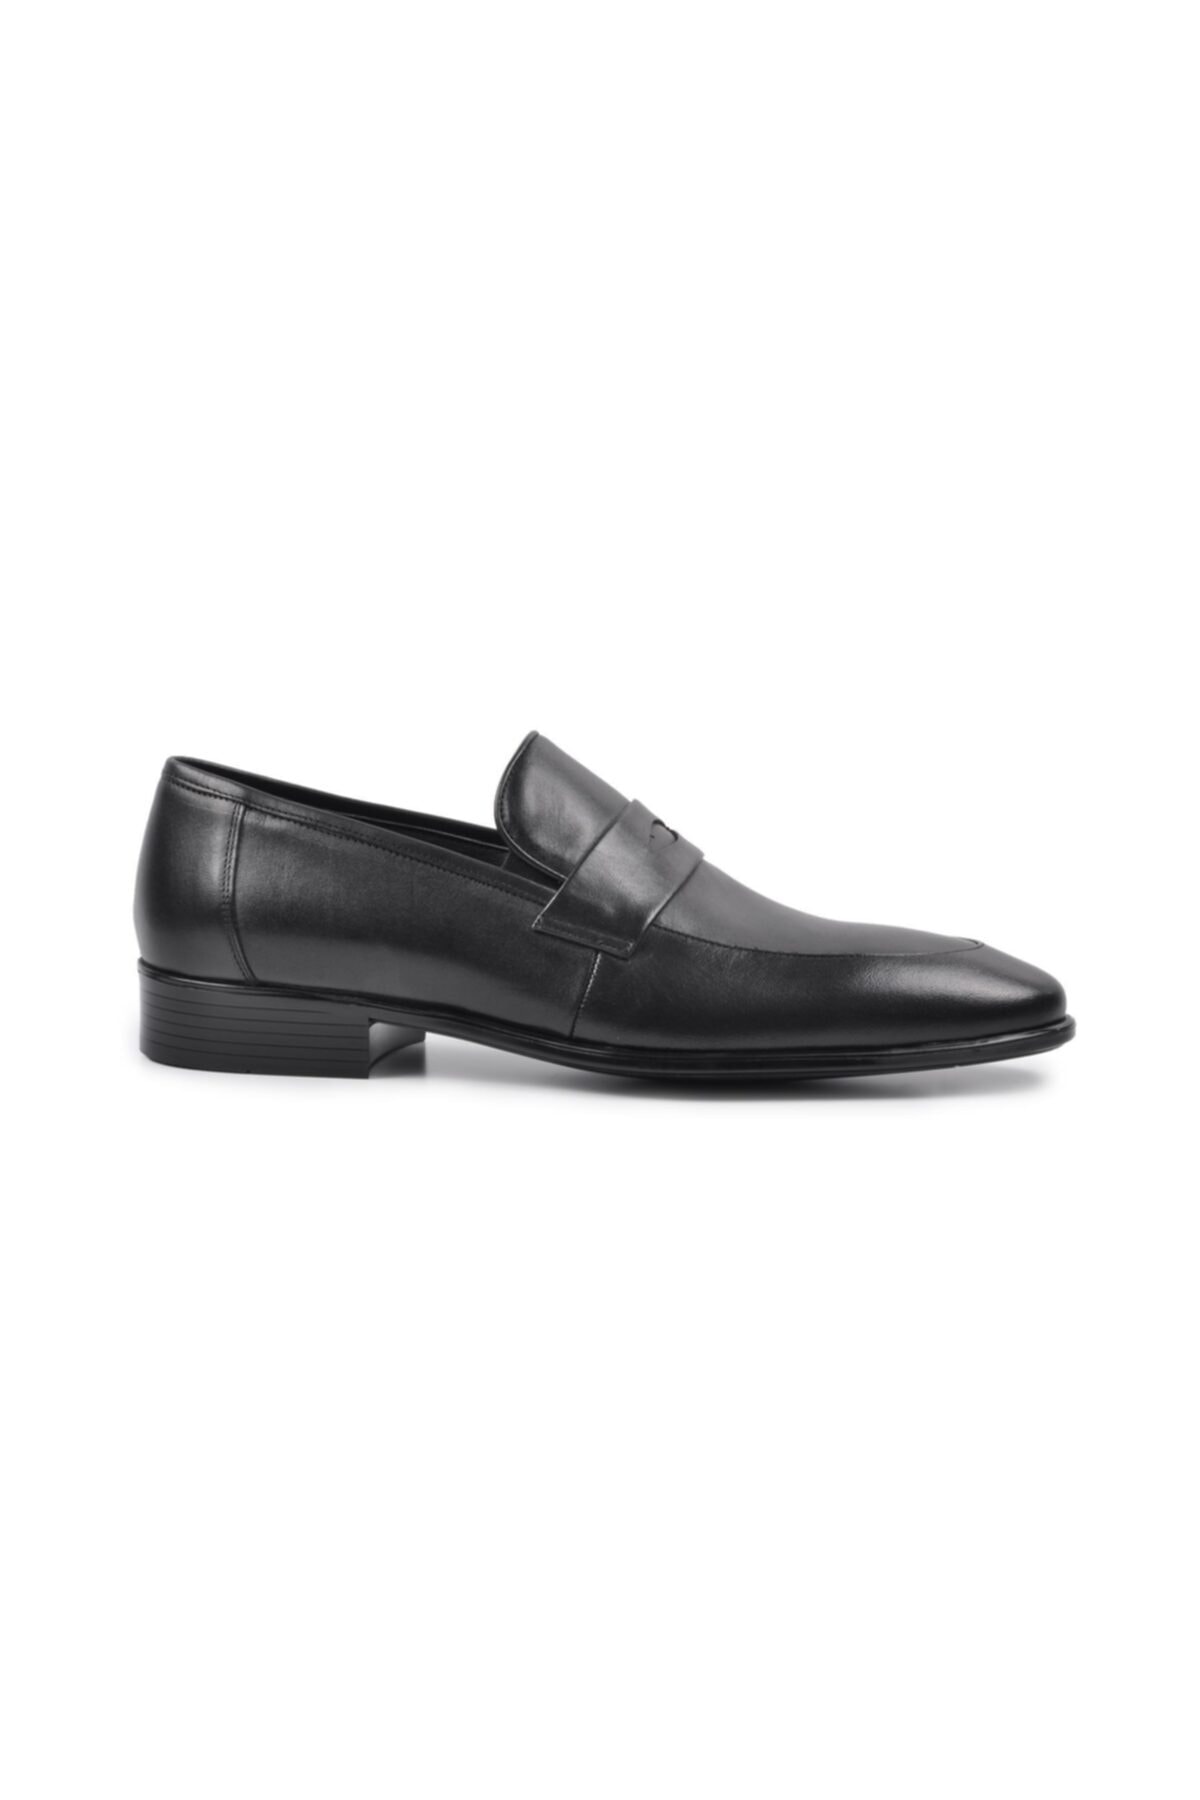 Fosco 9074 Siyah Hakiki Deri Erkek Klasik Ayakkabı